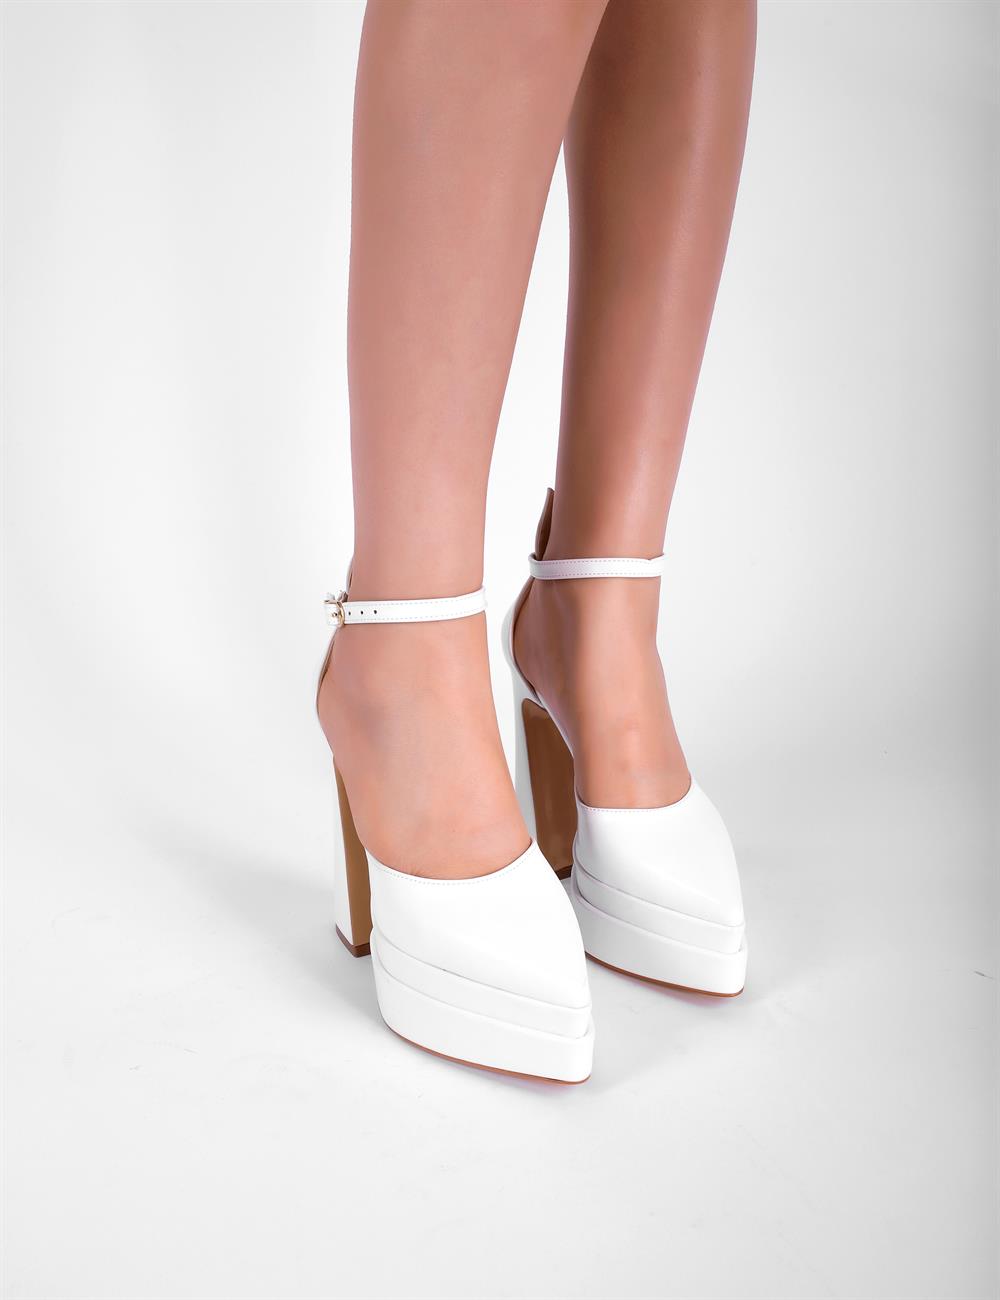 Glamis Kadın Topuklu Ayakkabı Beyaz - Kadın Ayakkabı